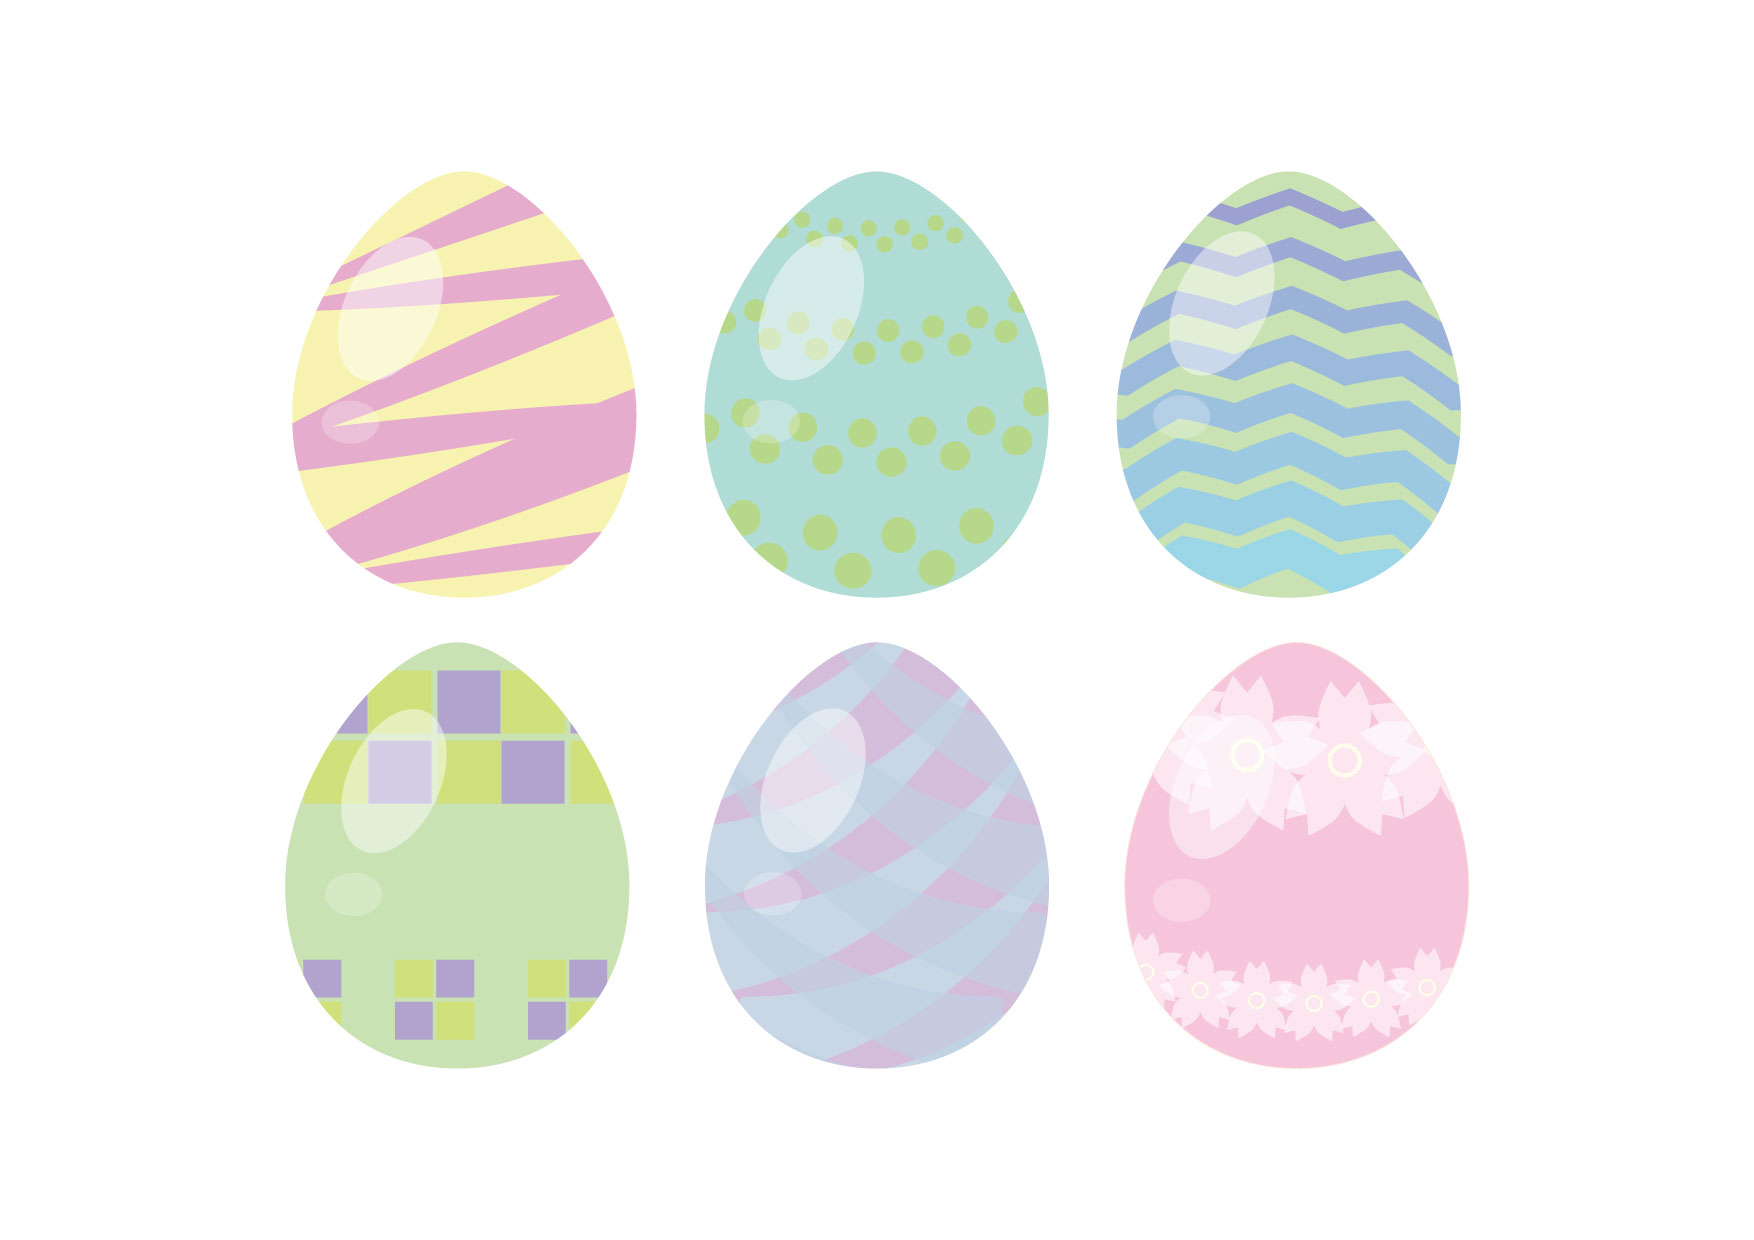 可愛いイラスト無料 イースターエッグ 6つ Free Illustration 6 Easter Eggs 公式 イラスト素材 サイト イラストダウンロード